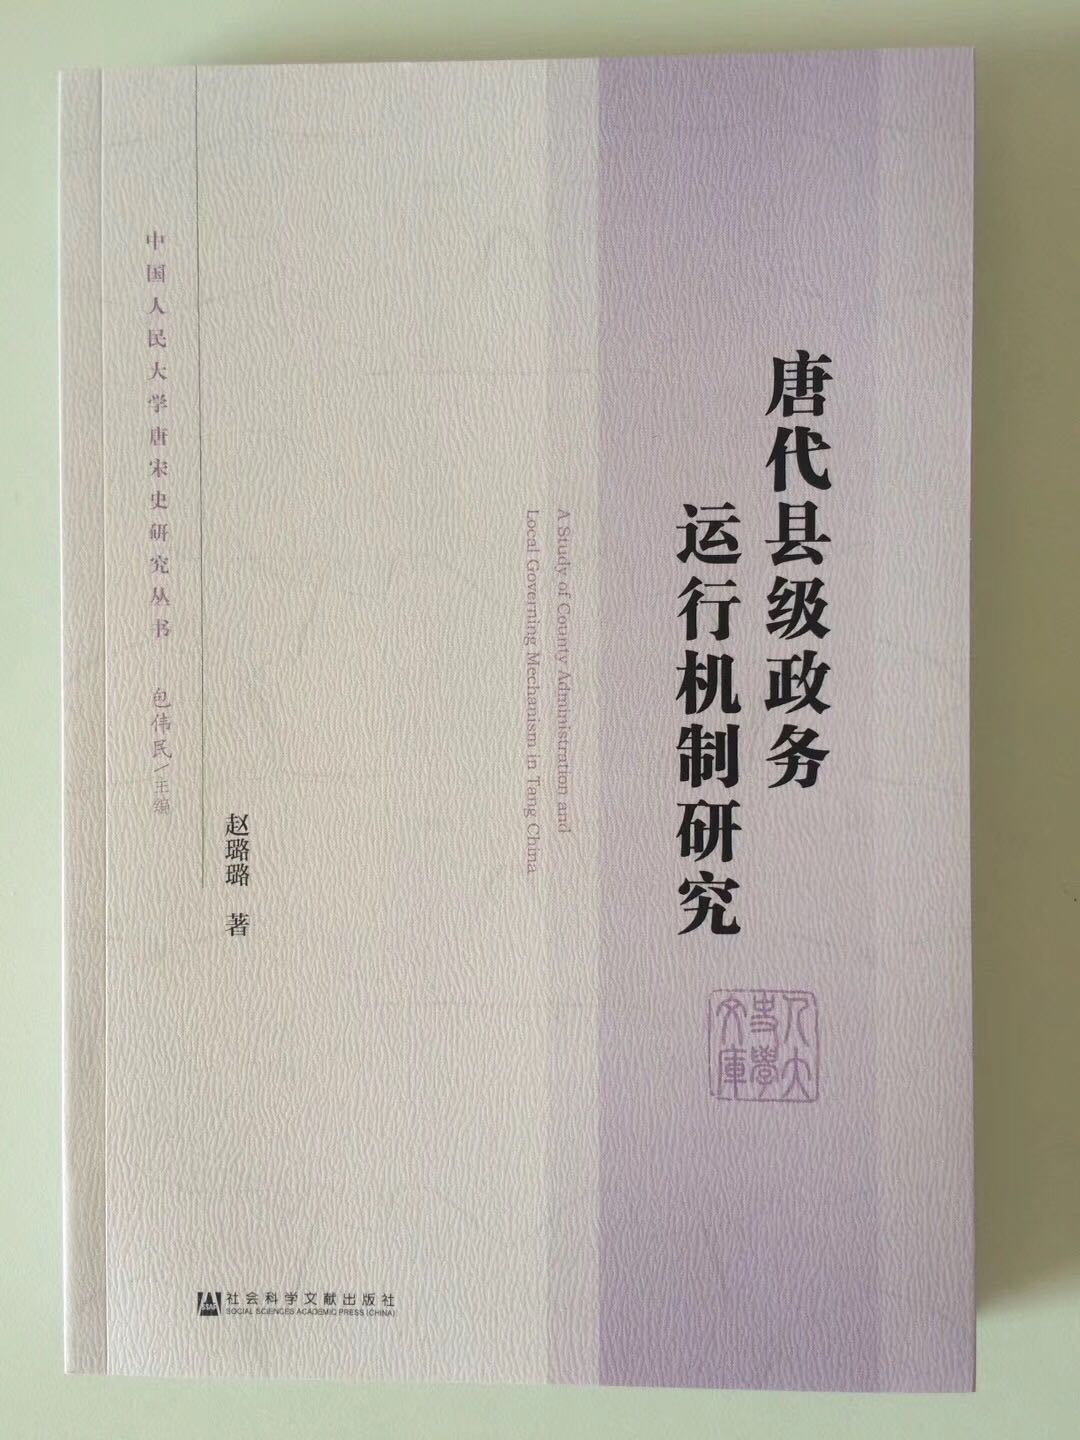 作者是张国刚先生的博士，选题不错，买来看看。